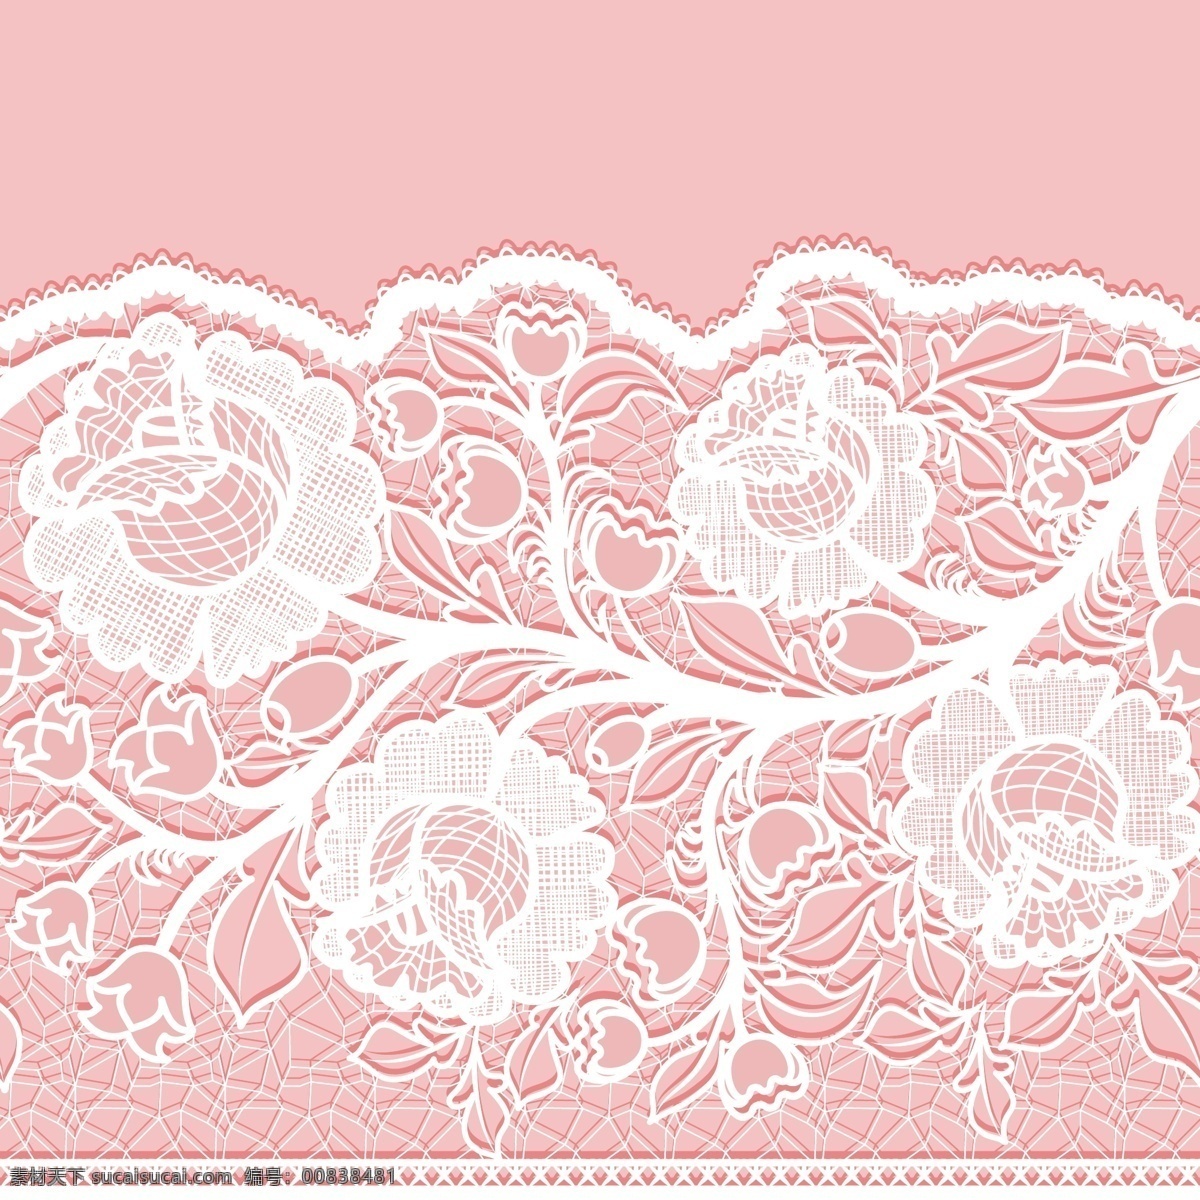 白色 蕾丝 花卉图片 花卉 背景 花边 矢量图 矢量 高清图片